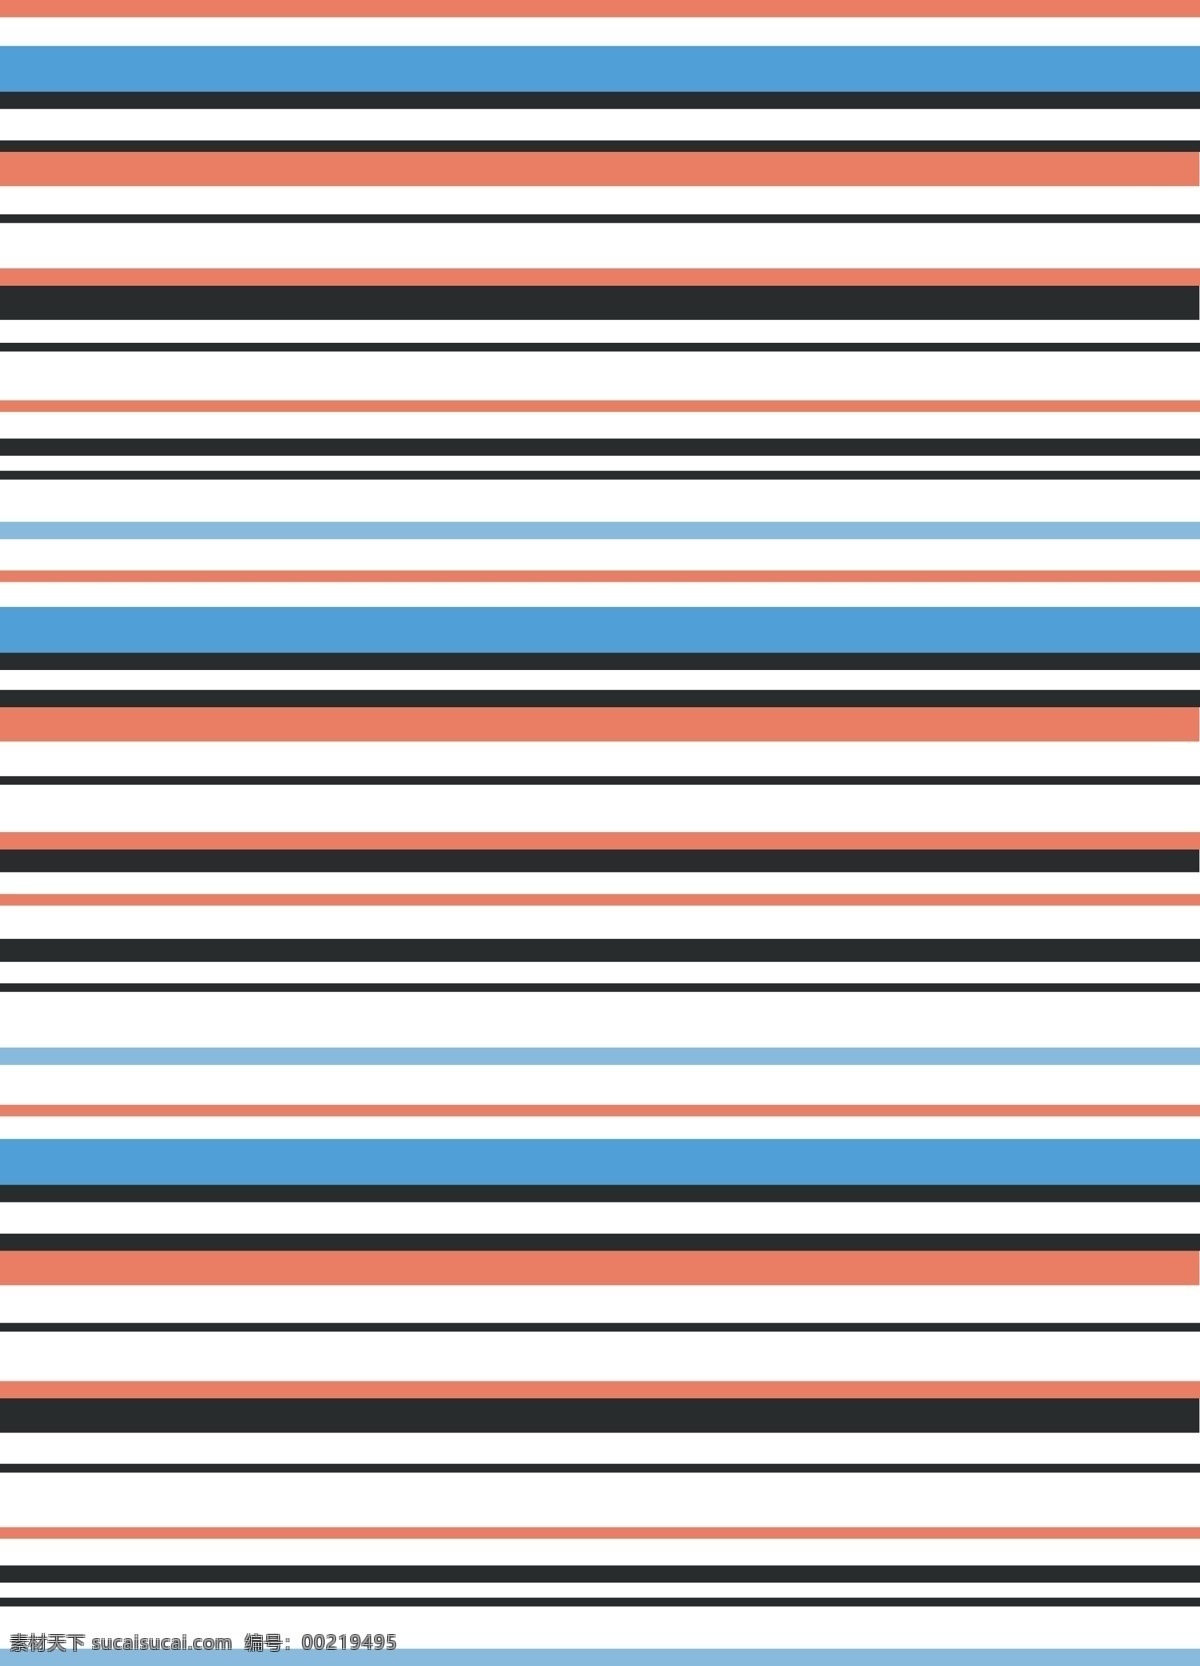 色彩线条设计 多重色彩 线条 经典 矢量 法国 原色 元素 红蓝 黑色 蓝带 黑带 条纹线条 底纹边框